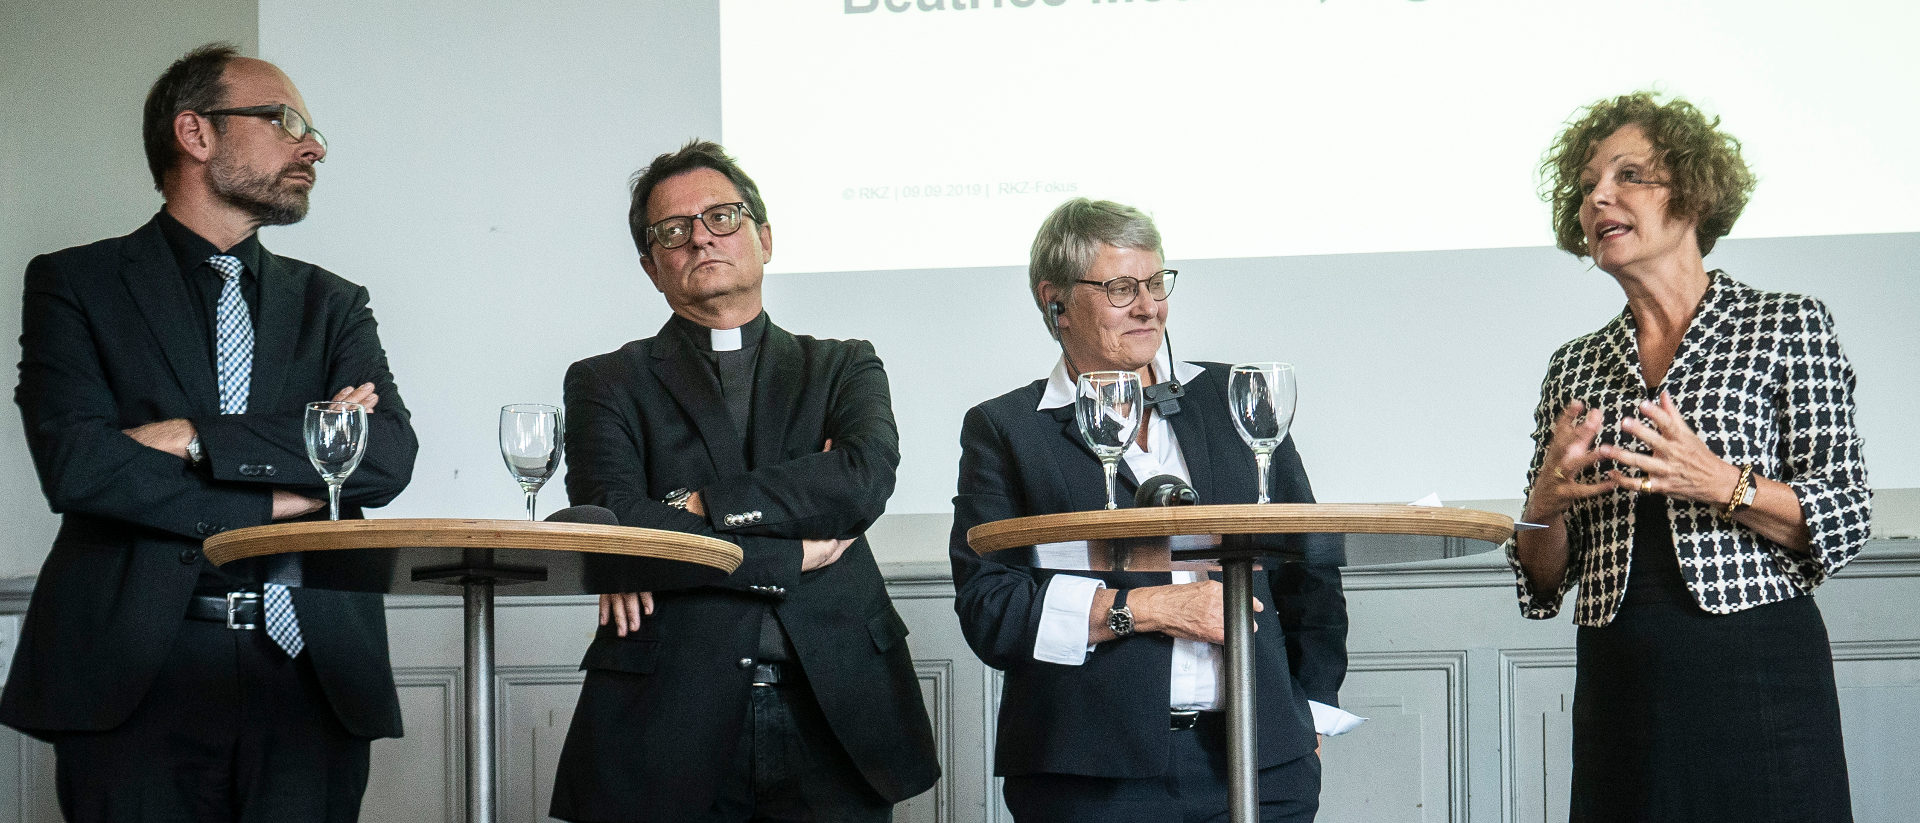 Beatrice Müller moderiert das Podium mit Béatrice Métraux, Felix Gmür und Luc Humbel (von rechts).